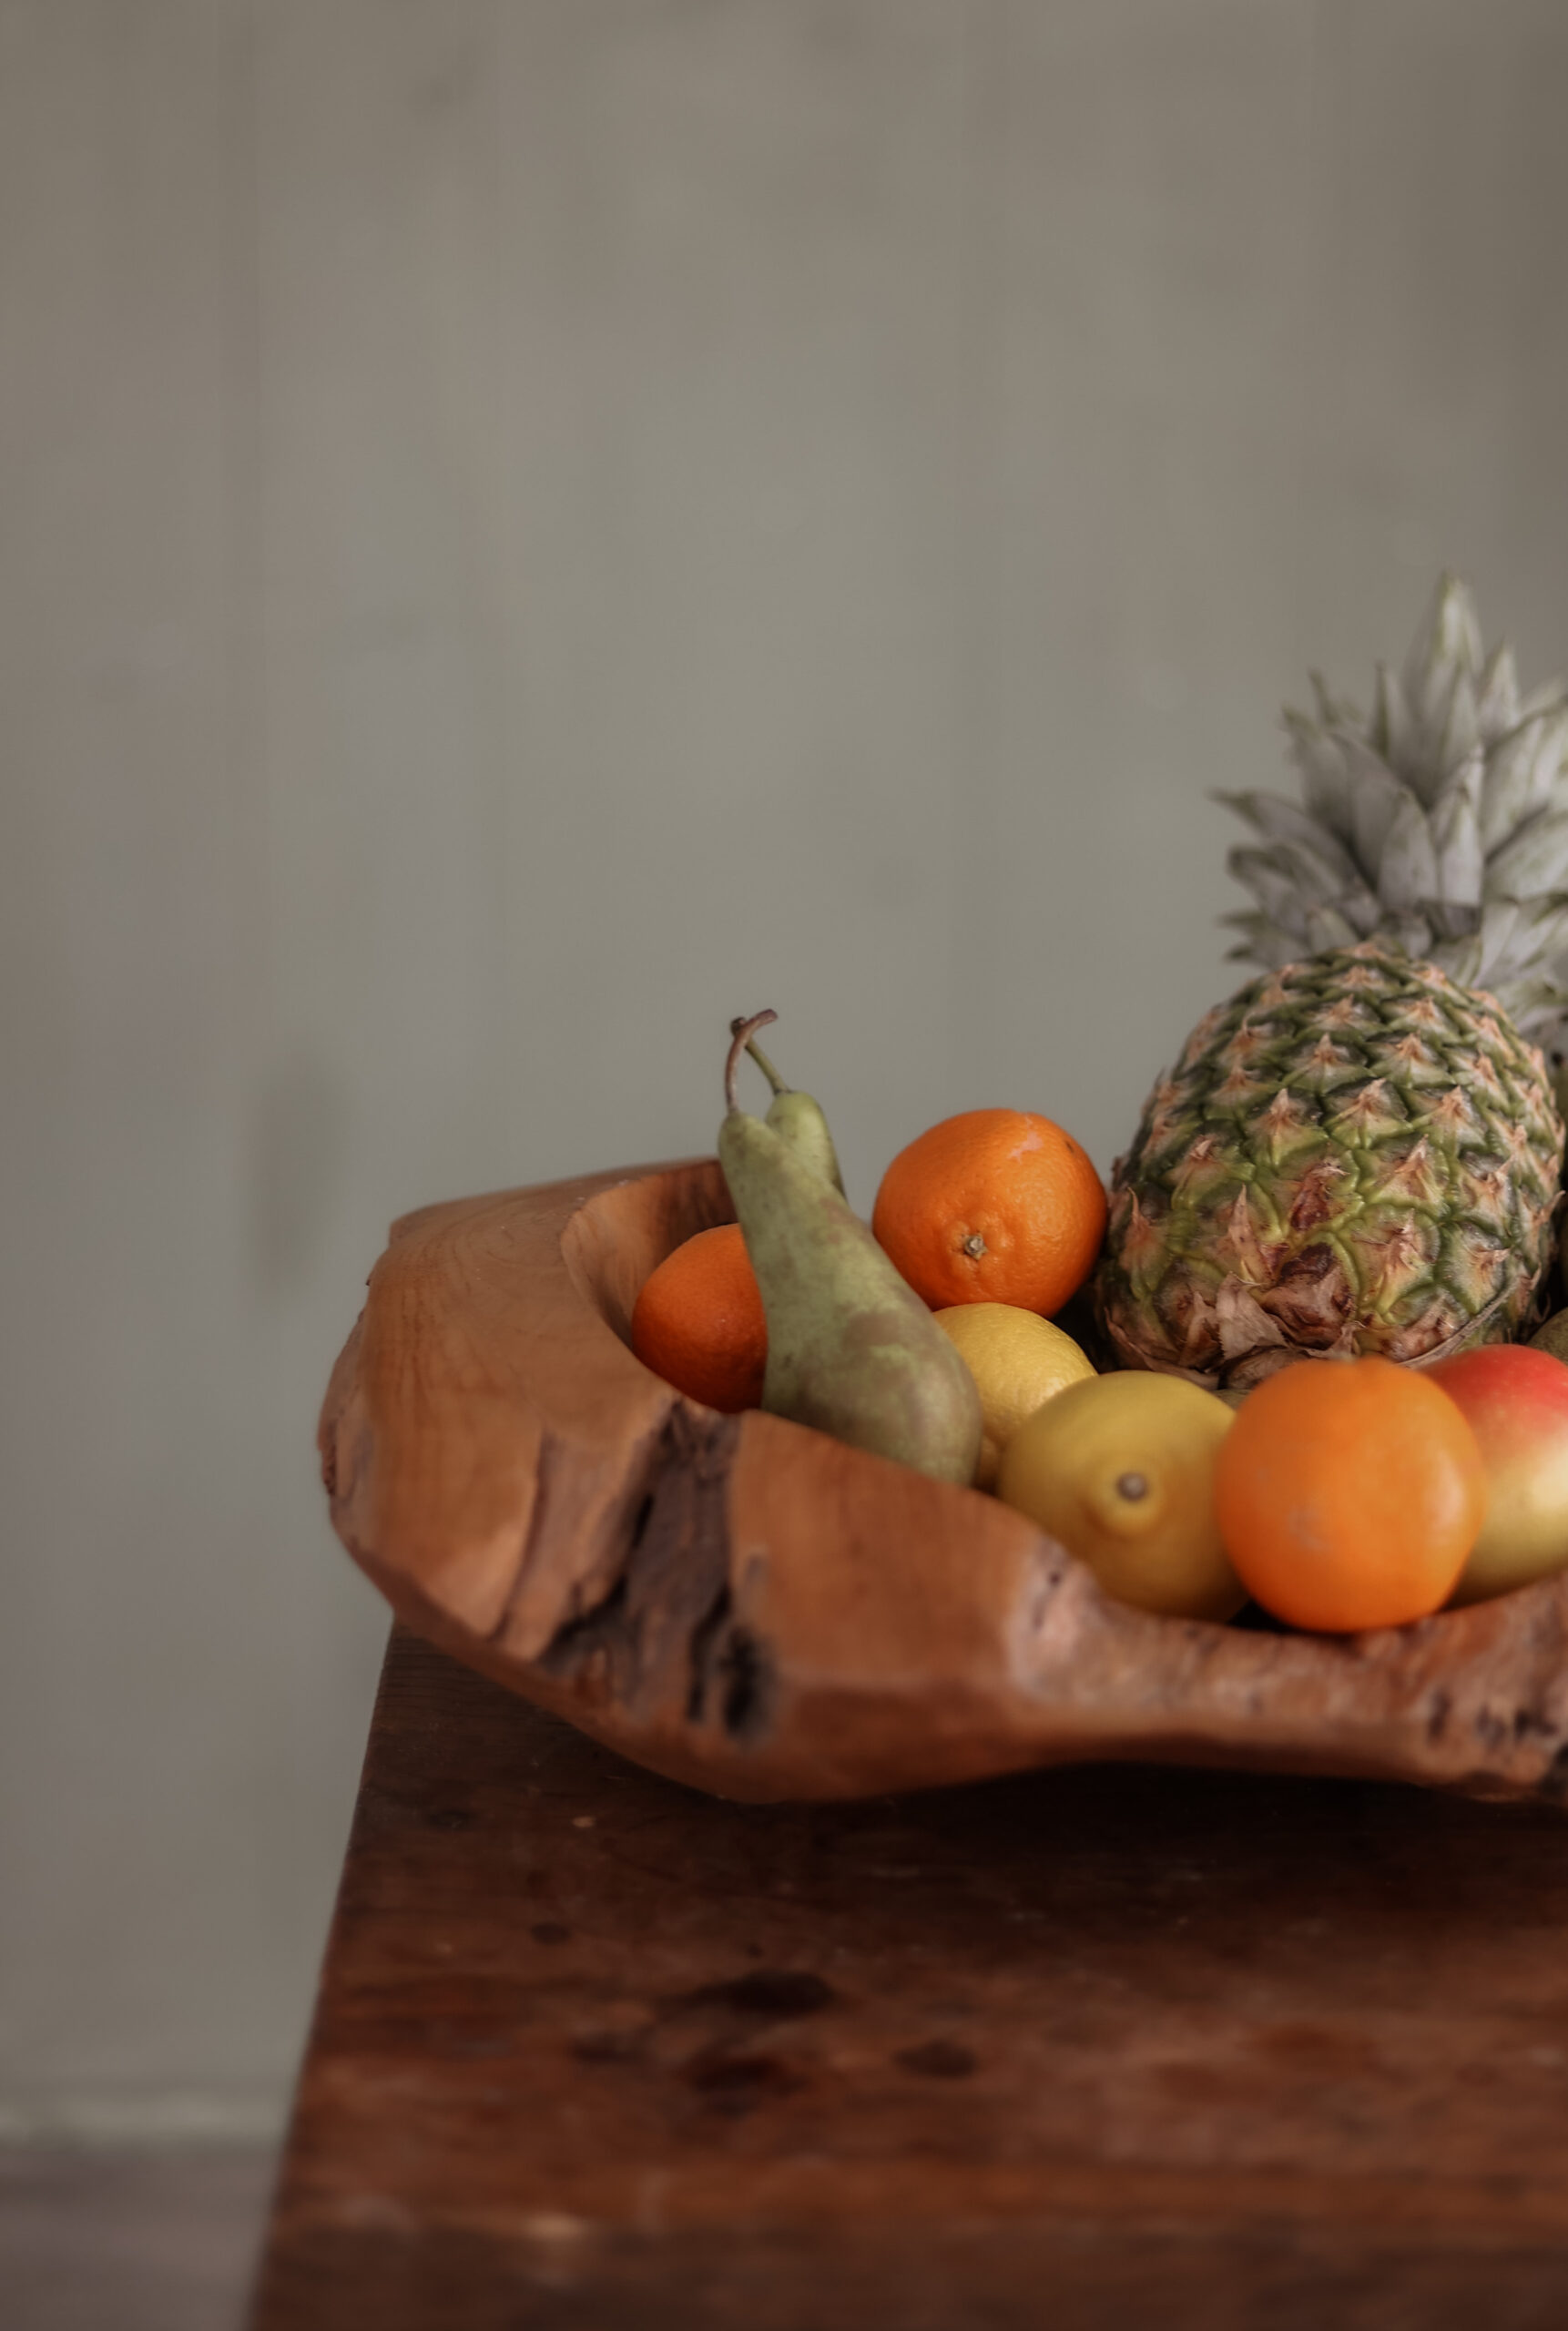 fruitschaal met ananas, banaan, sinaasappel, peer. Onbewerkt eten is de basis van een gezonde leefstijl